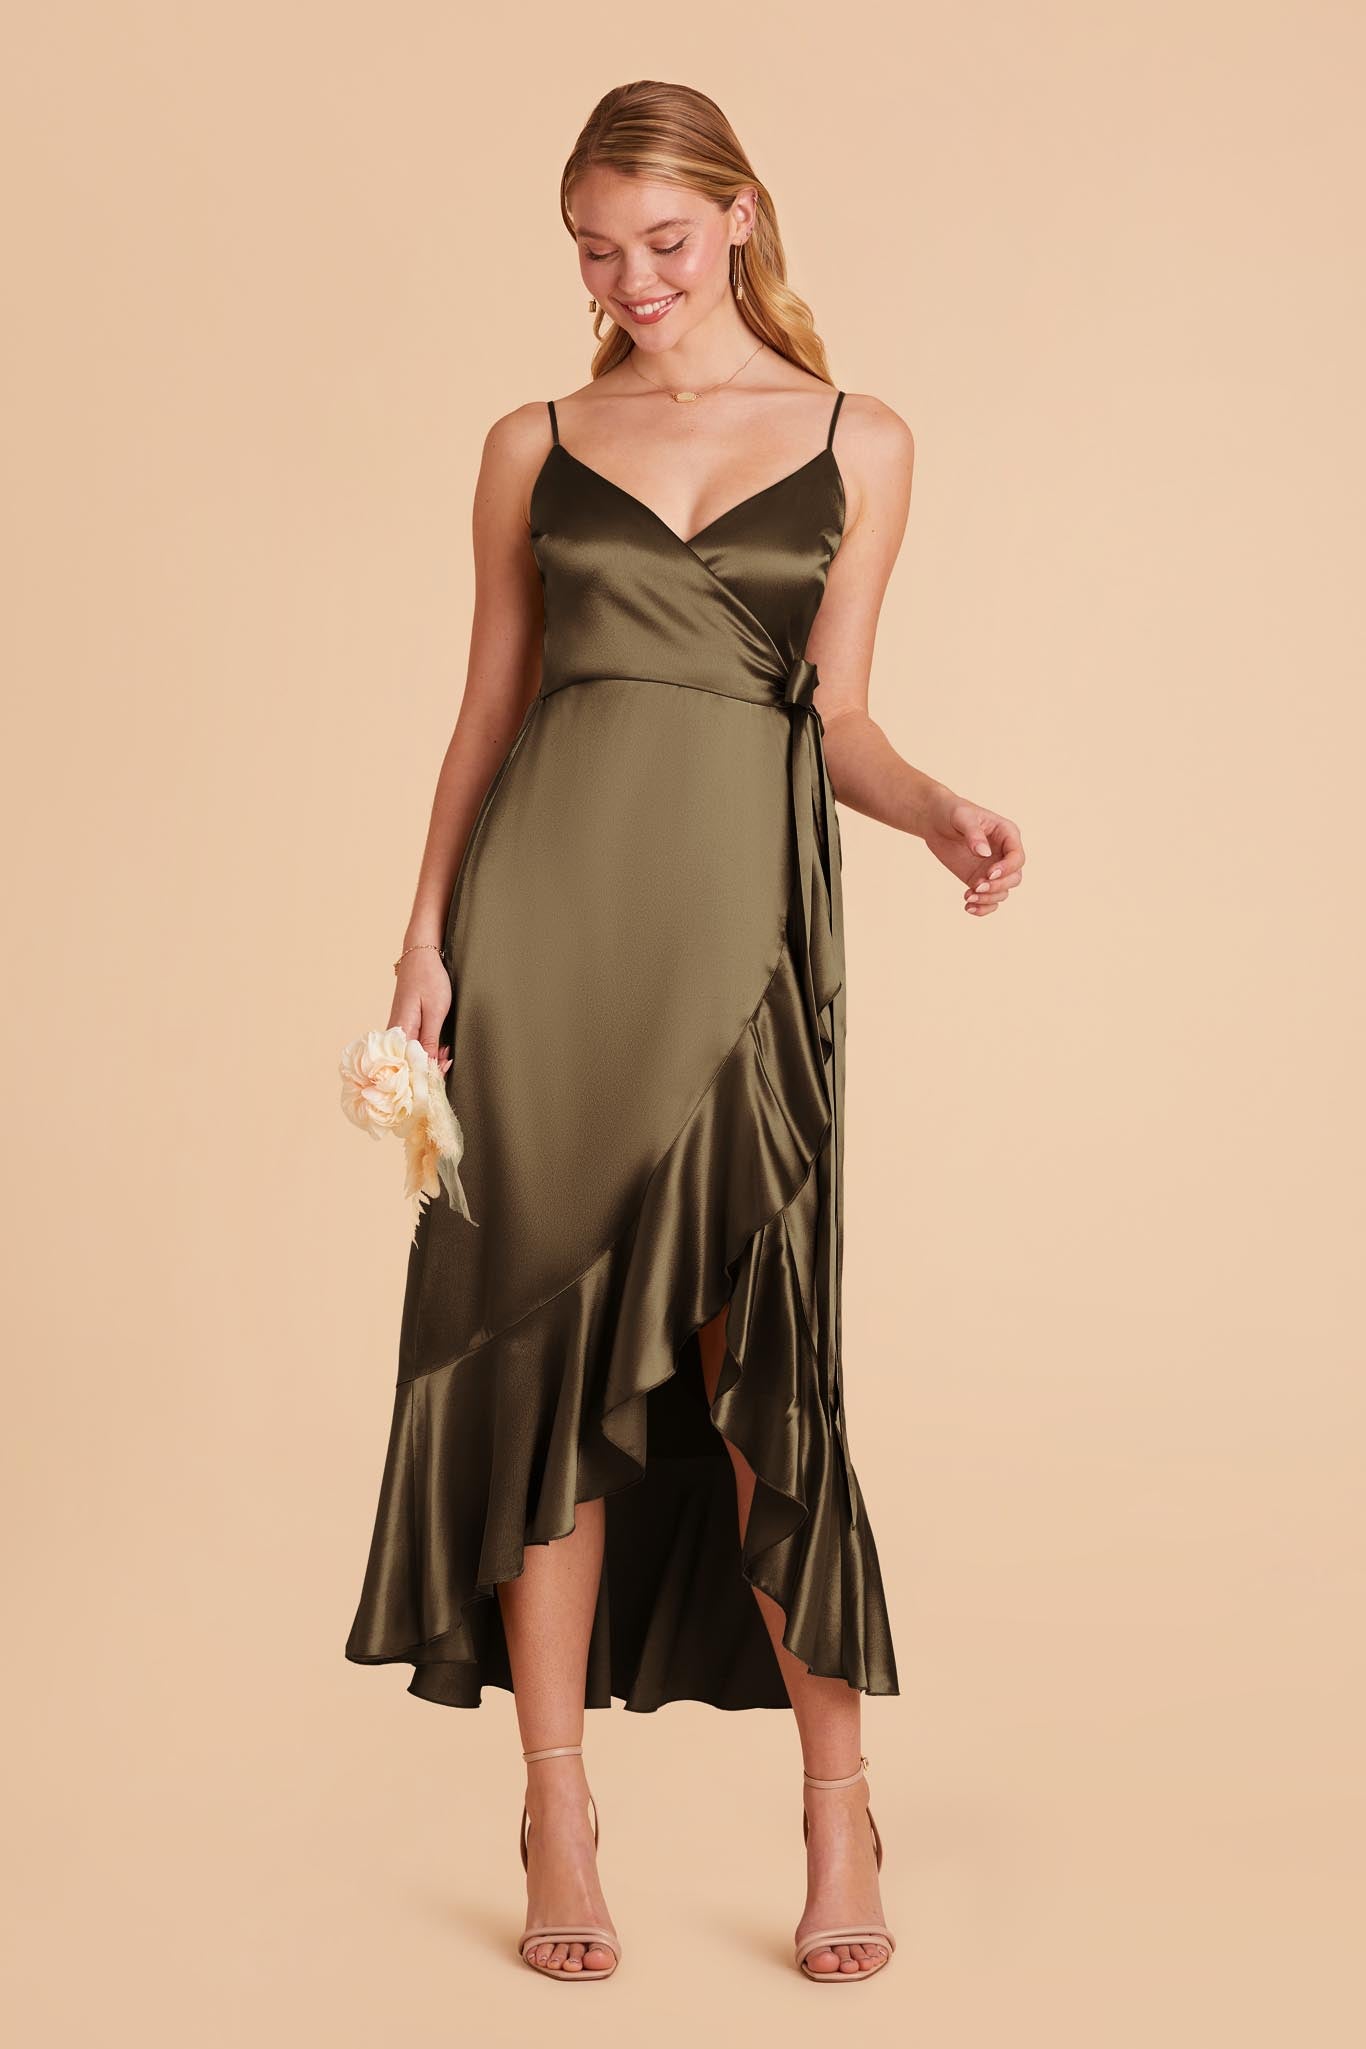 Olive YC Midi Dress by Birdy Grey